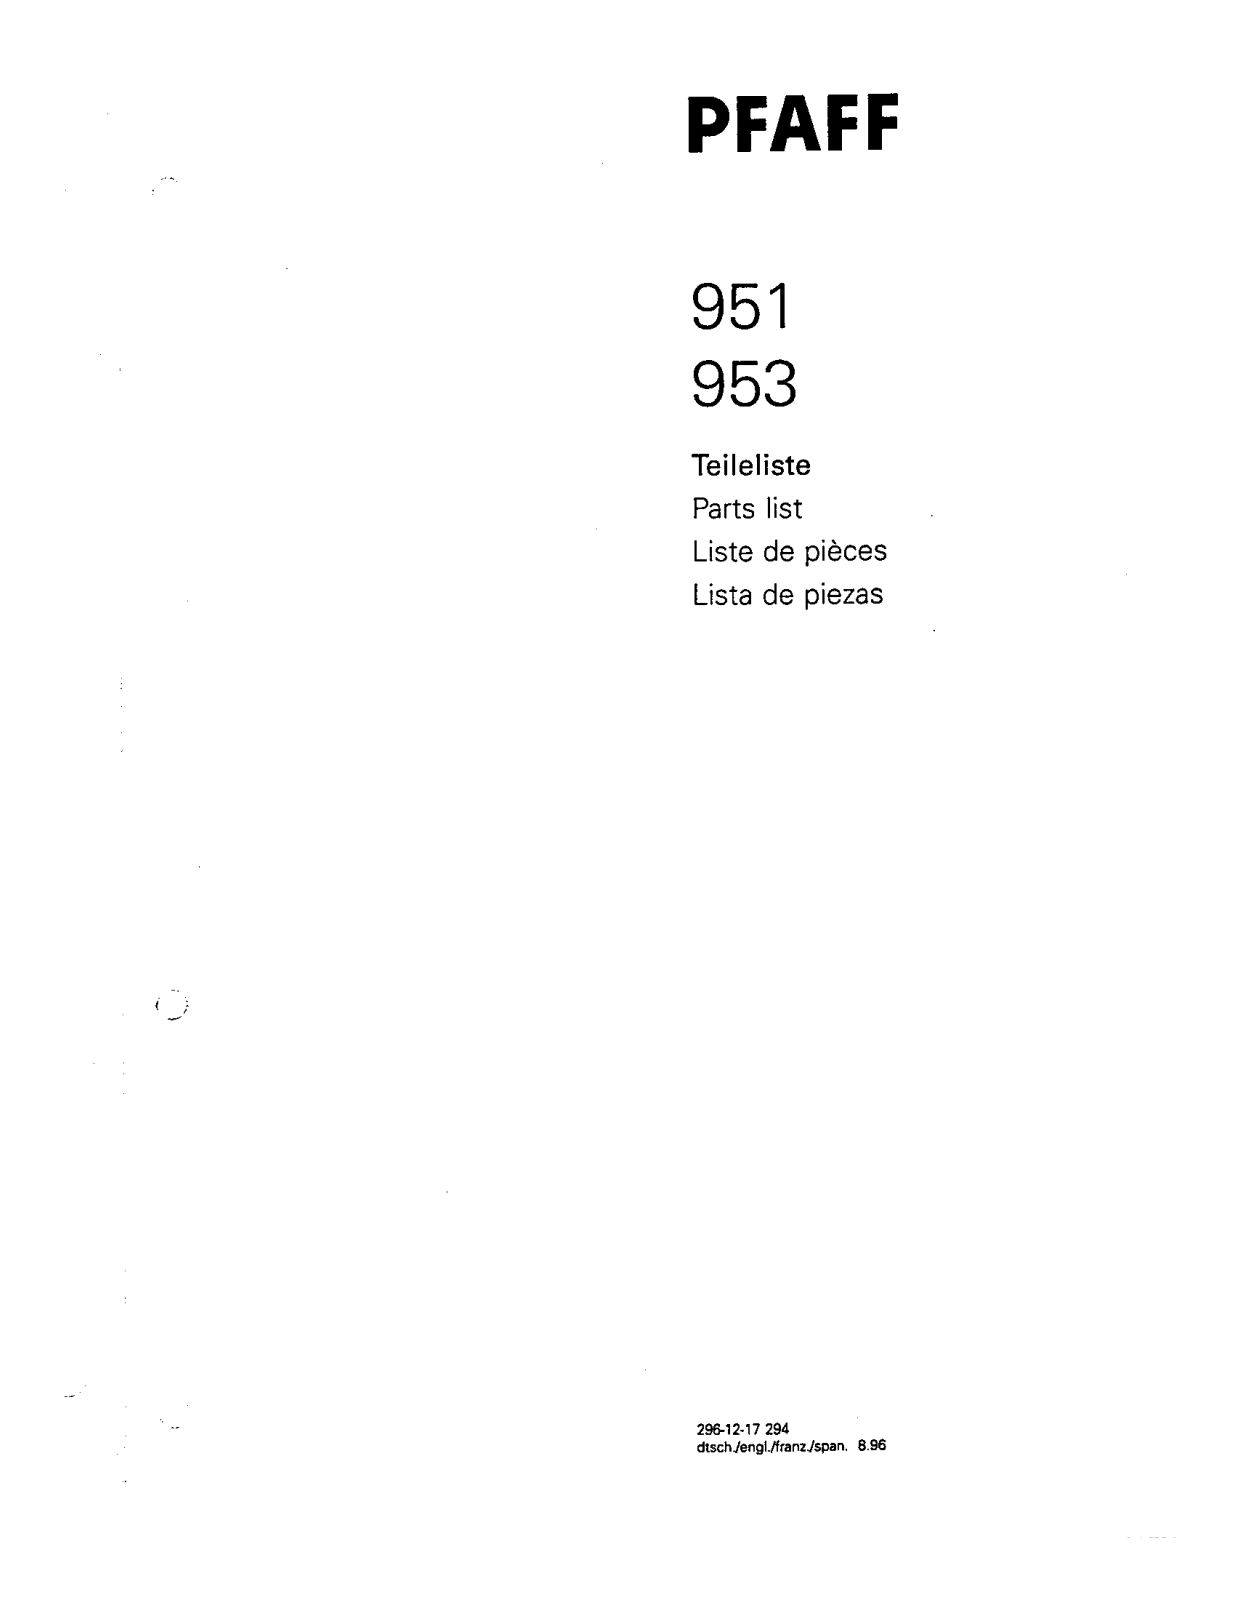 Pfaff 951, 953 Parts List